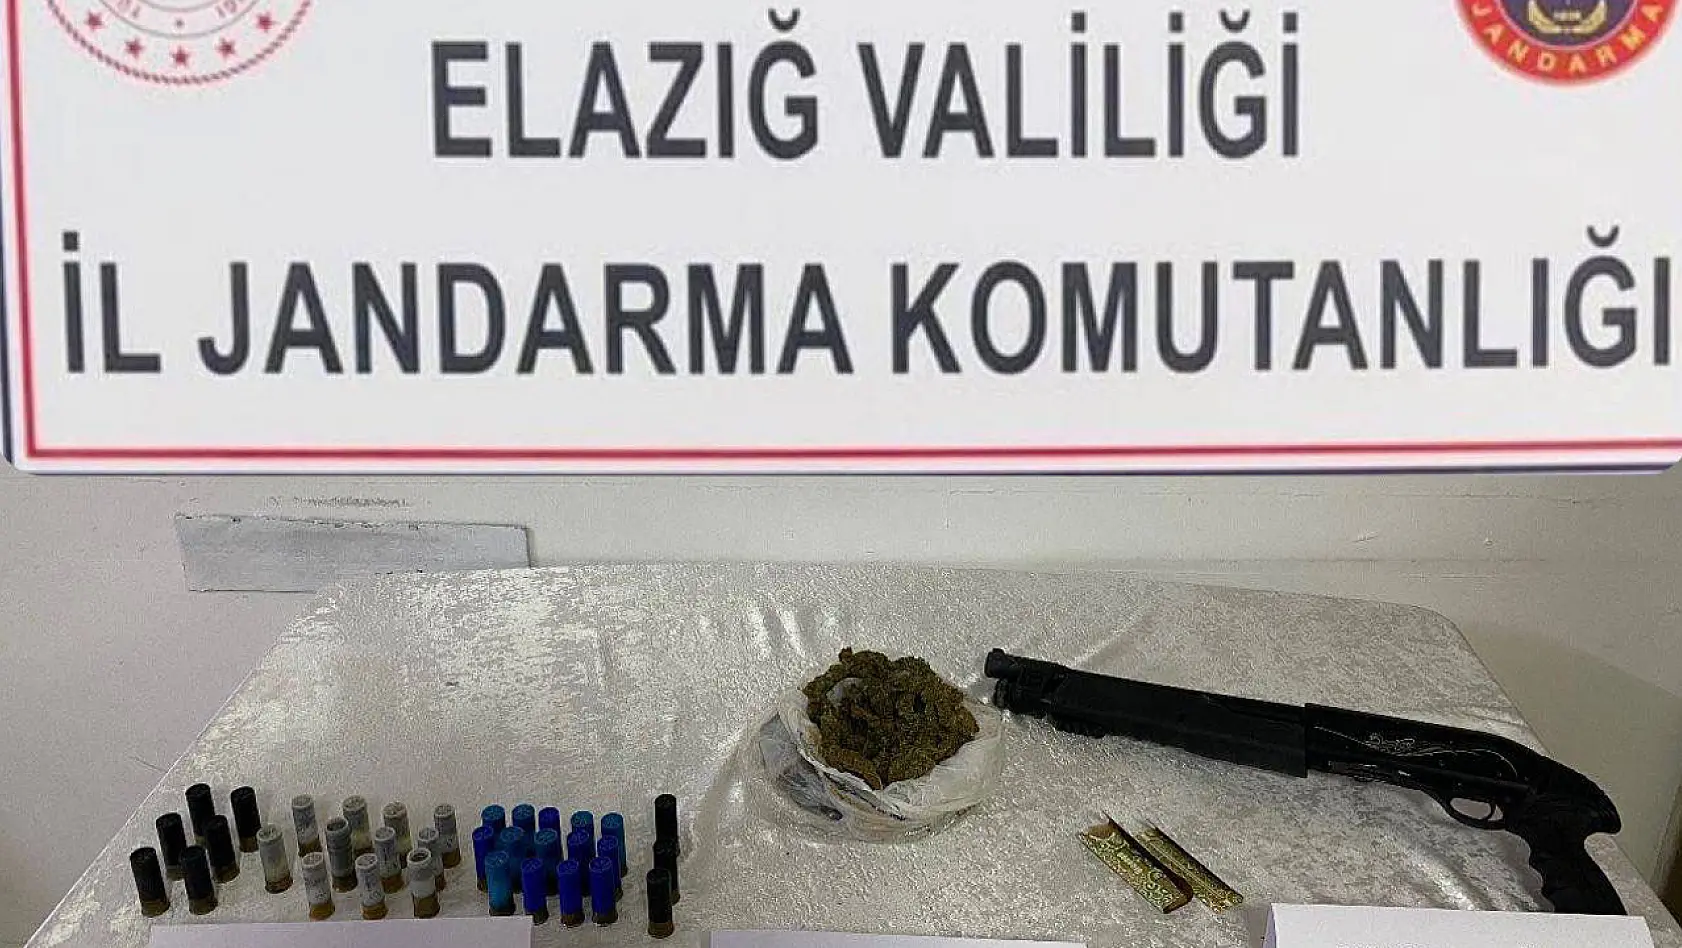 Elazığ'da Jandarma Operasyonunda Ruhsatsız Silah  ve Uyuşturucu Ele Geçirildi 